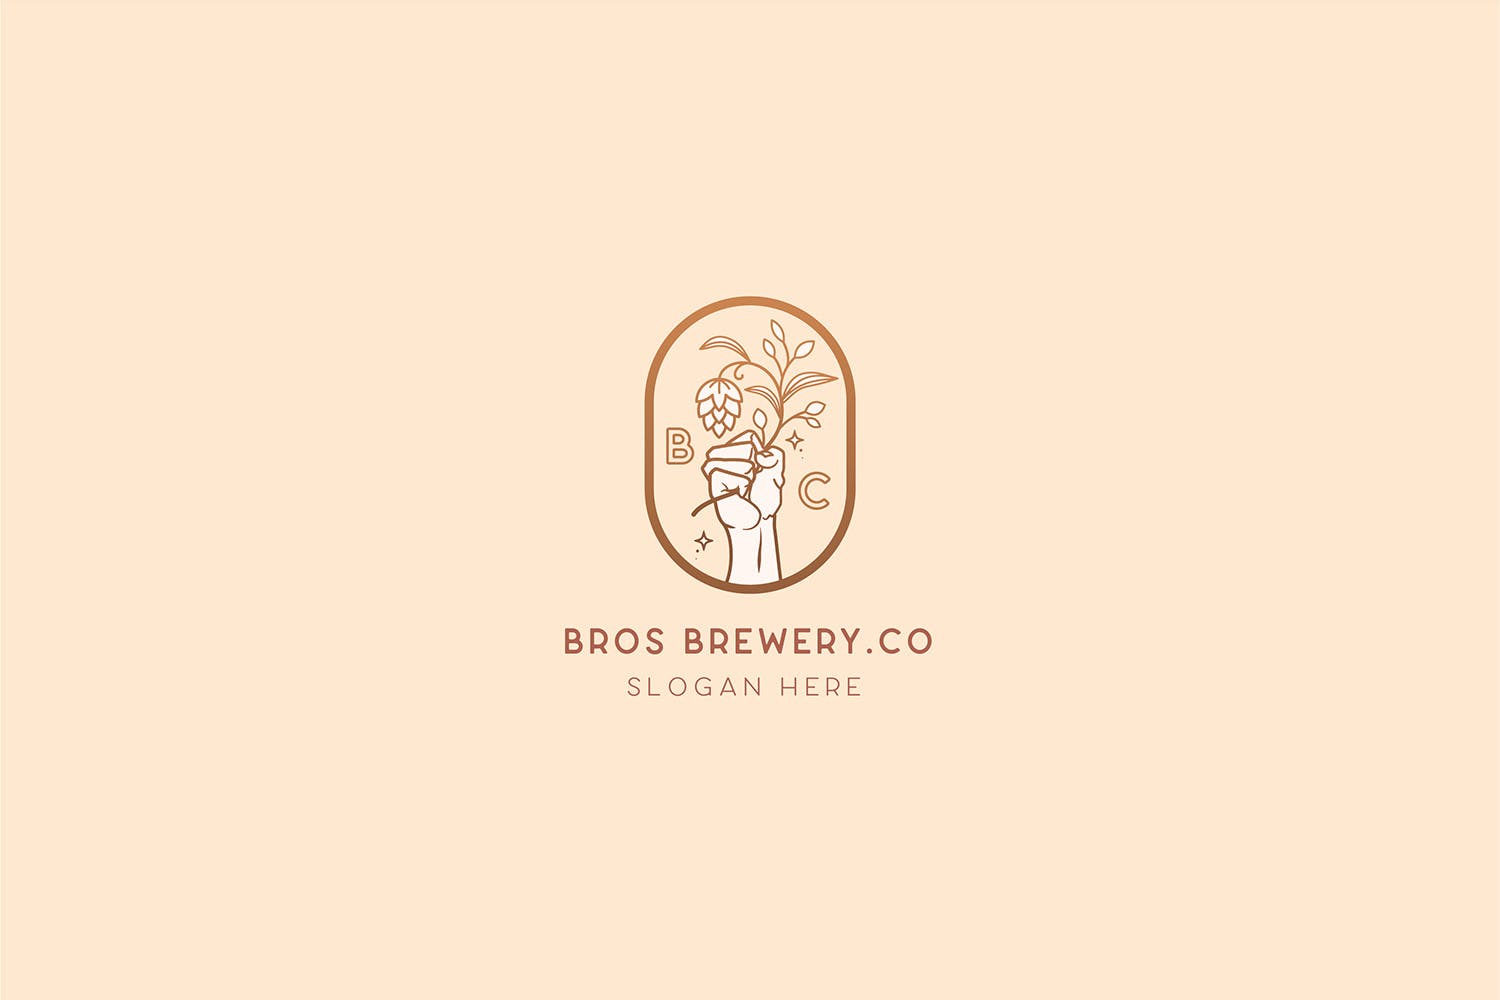 咖啡/啤酒品牌Logo设计素材库精选模板 Brewery Brotherhood cafe beer Logo Template插图(2)